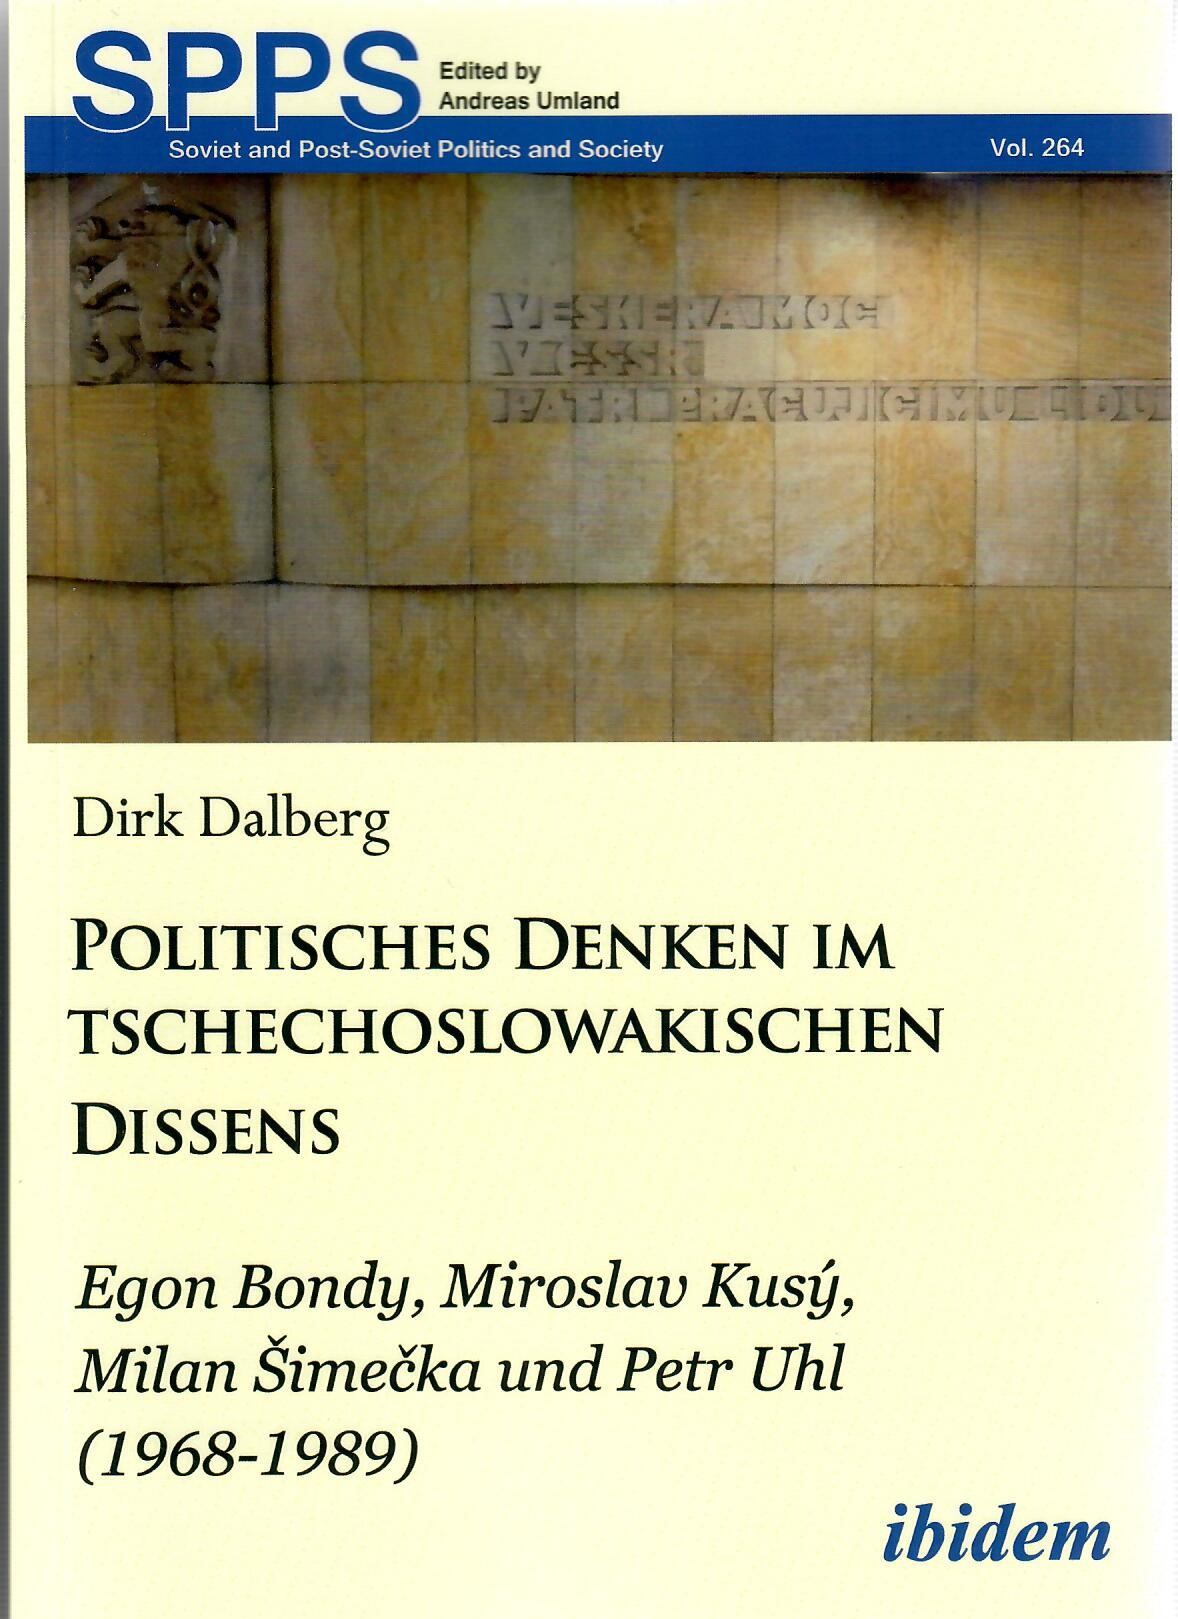 Politisches Denken im tschechoslowakischen Dissens: Egon Bondy, Miroslav Kusý, Milan Šimečka und Petr Uhl (1968-1989)